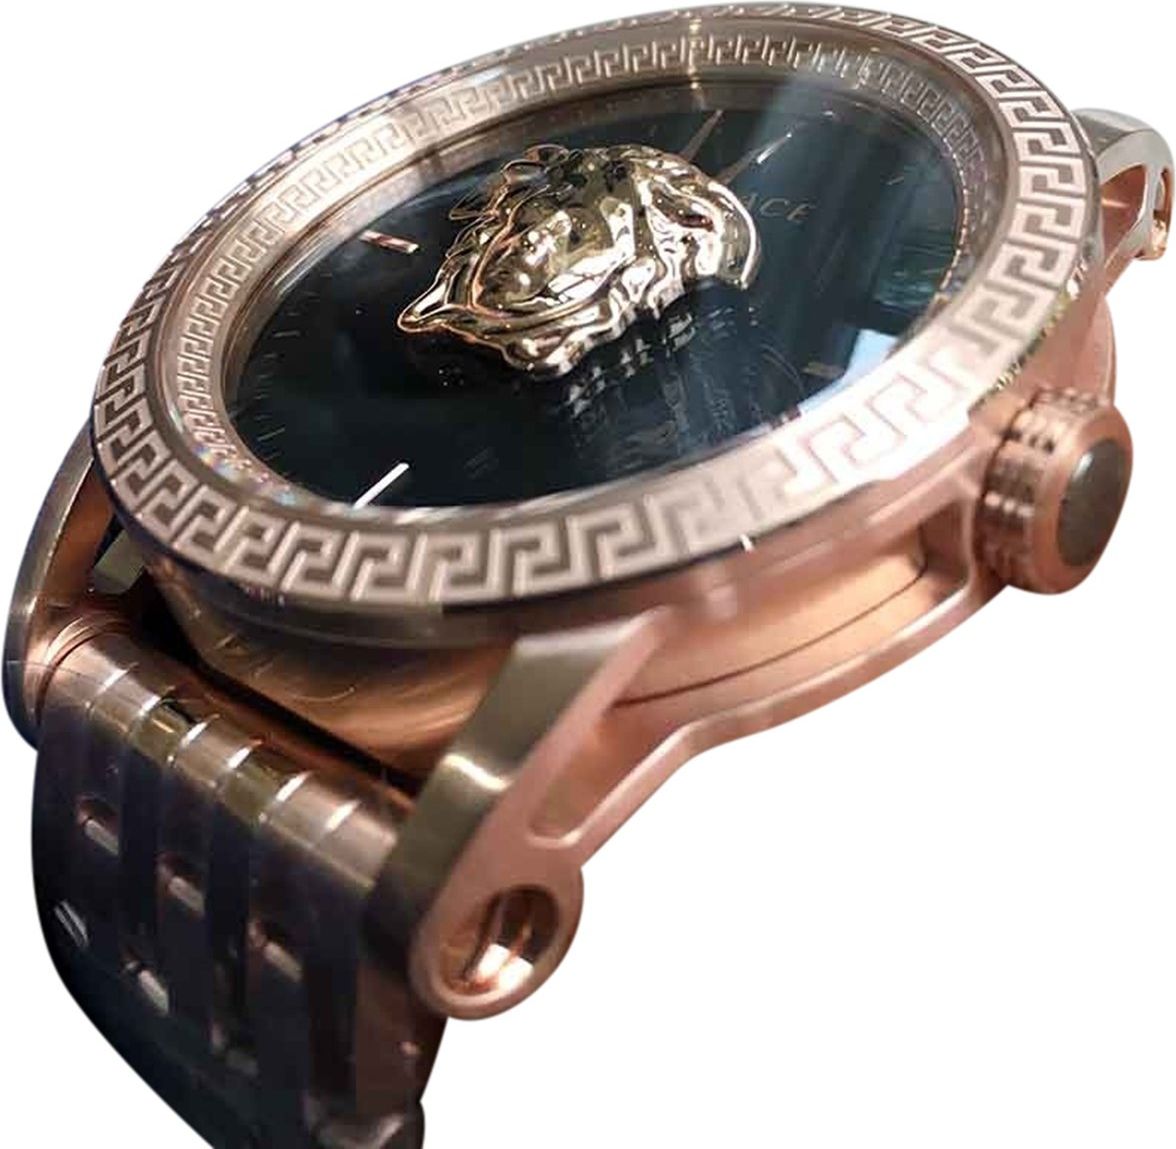 Versace VERD00718 Palazzo heren horloge 43 mm Zwart